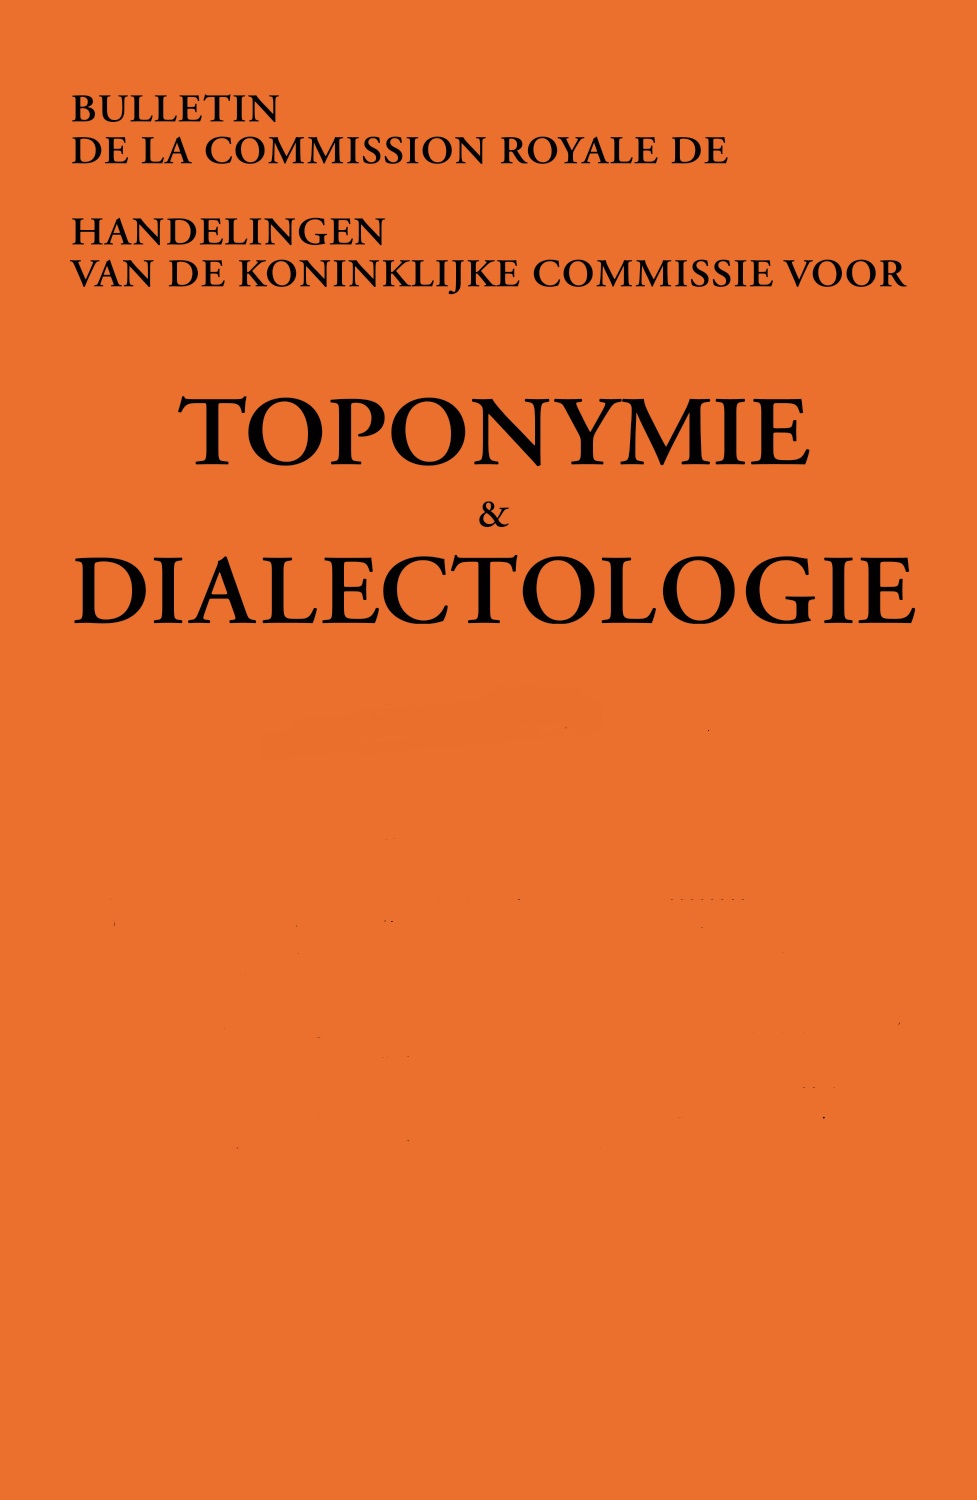 Het Toponymisch Woordenboek van Maurits Gysseling: Aanvullingen en verbeteringen op basis van de materiaalverzameling voor het Toponymisch Woordenboek van Oost- en Zeeuws-Vlaanderen